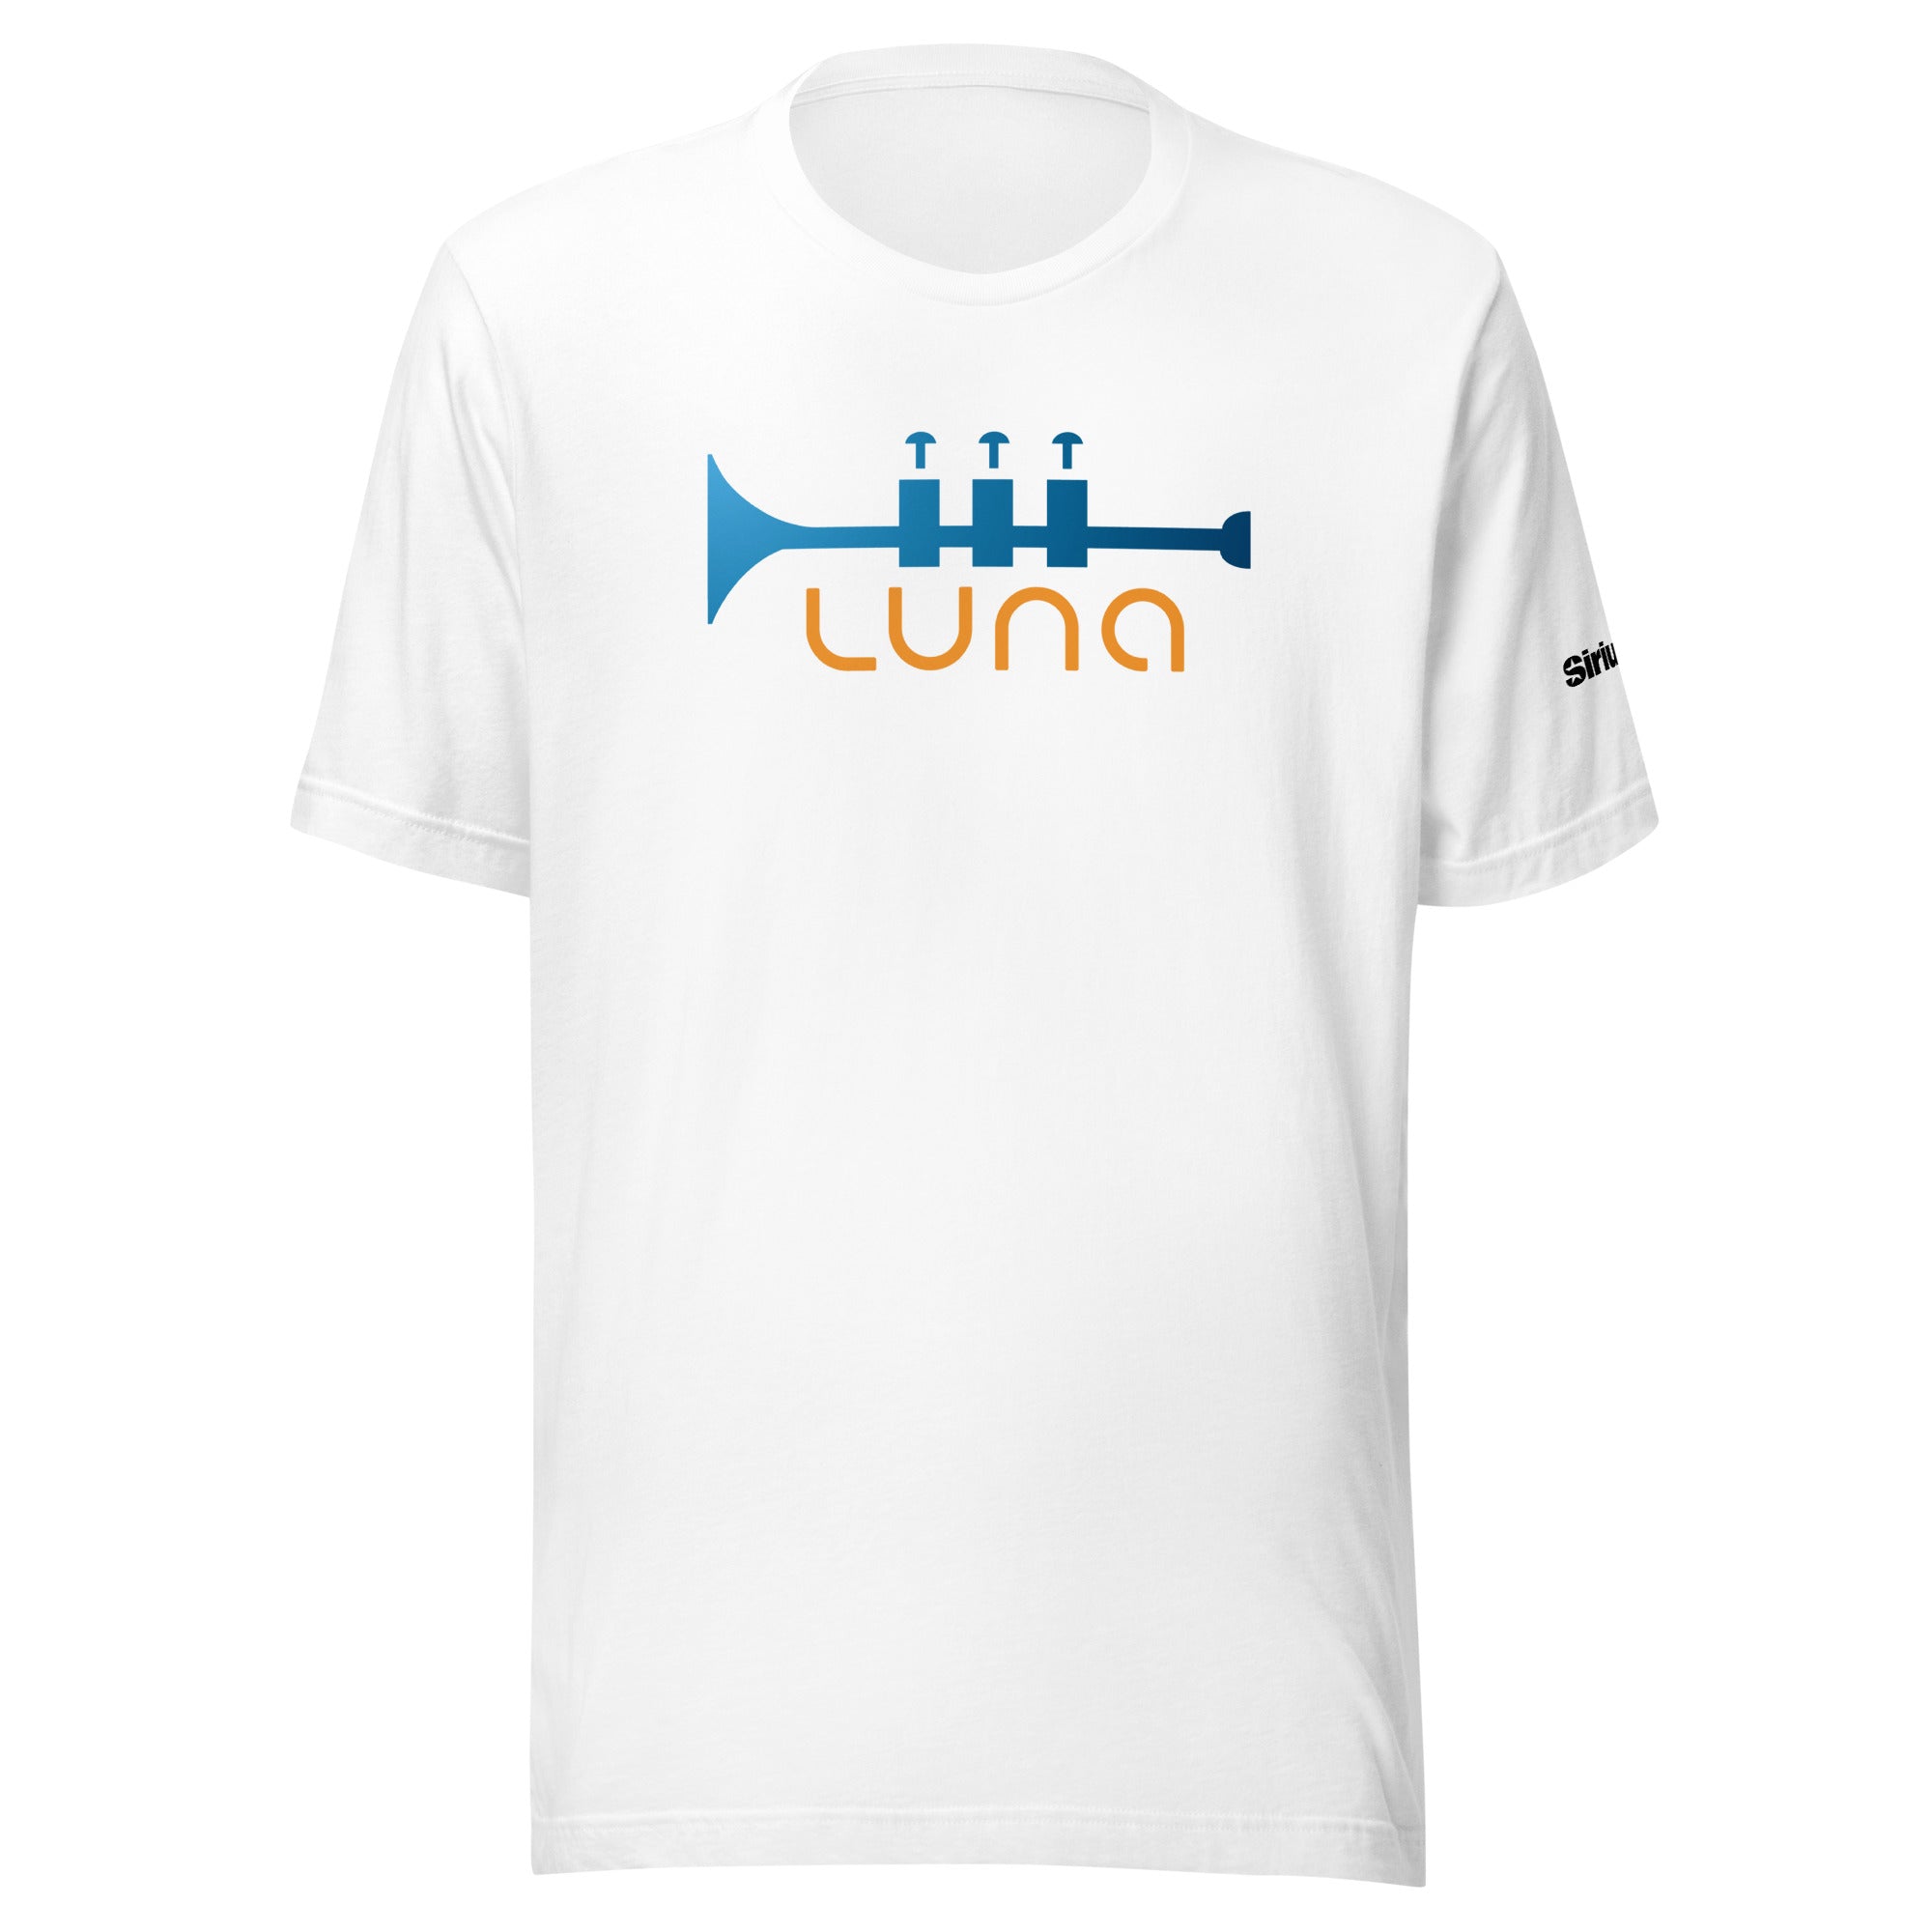 Luna: T-shirt (White)